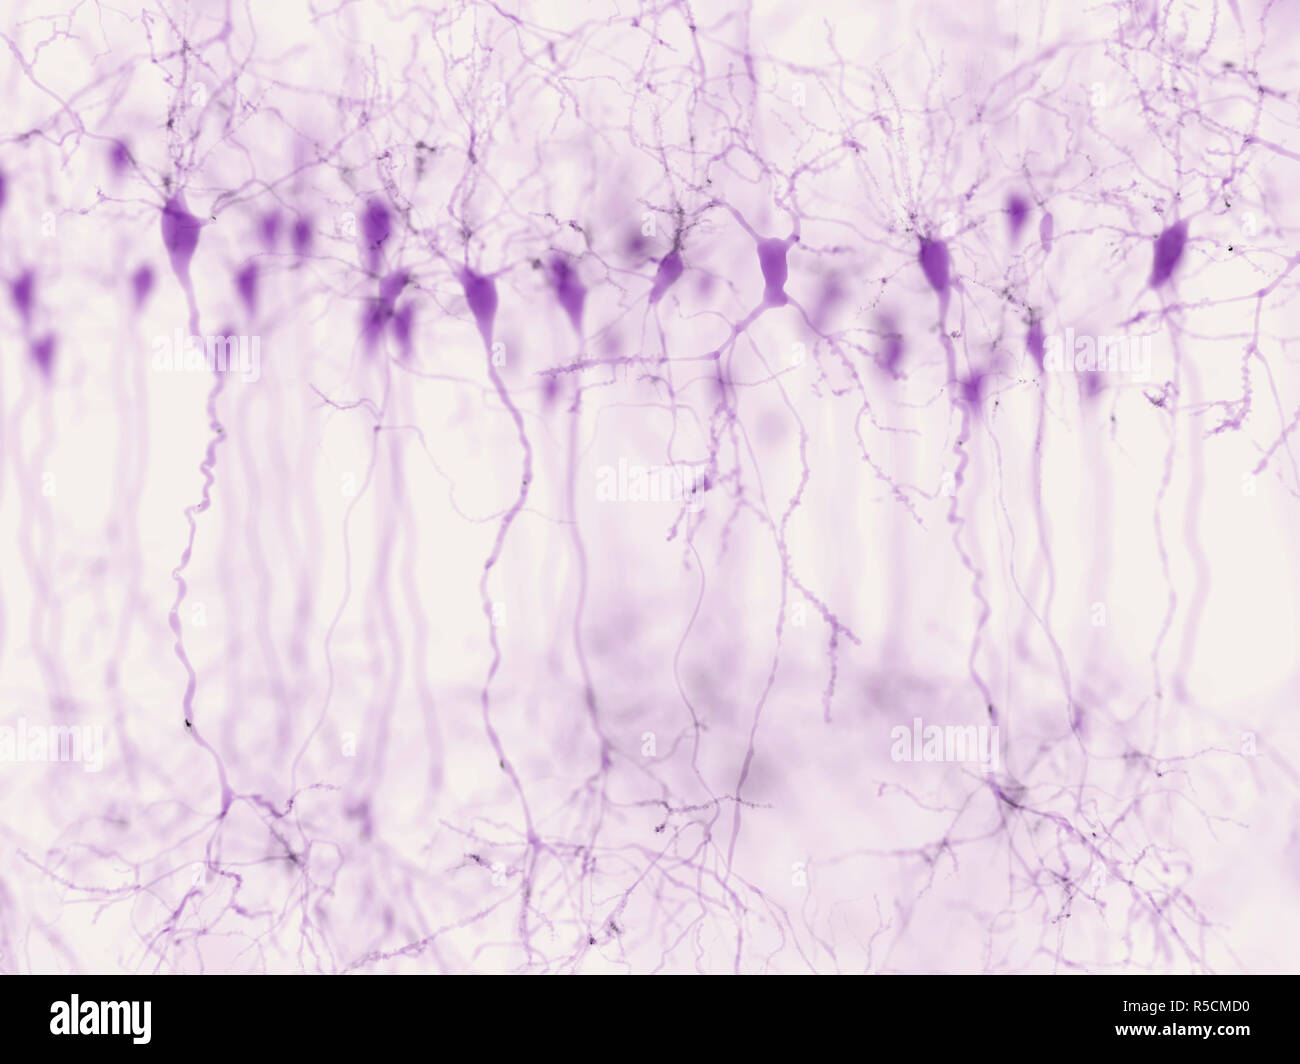 Pyramidenförmige Nervenzellen in der Großhirnrinde, Illustration. Pyramidenförmigen Neuronen sind in bestimmten Bereichen des Gehirns einschließlich der Großhirnrinde, dem Hippocampus und der Amygdala. Hier, wie in der Abbildung gezeigt die synaptische Signale mittels Mikroskopie Fluoreszenz Technik hervorgehoben. Stockfoto